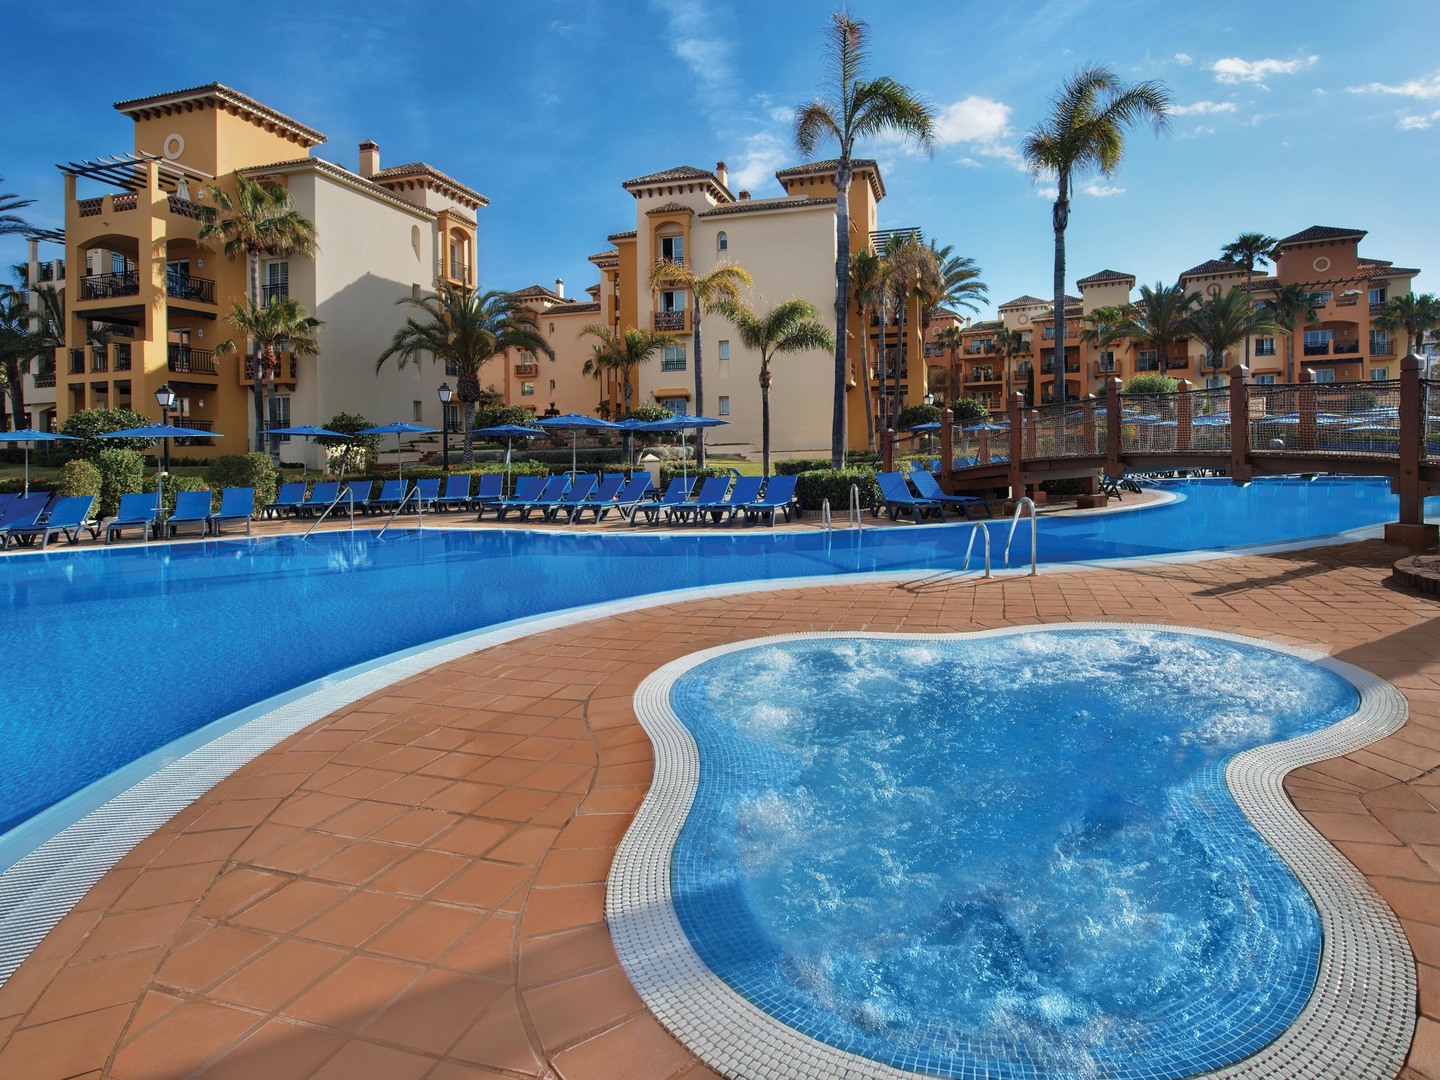 Marriott's Marbella Beach Resort Spa. Marriott's Marbella Beach Resort is located in Marbella,  Spain.